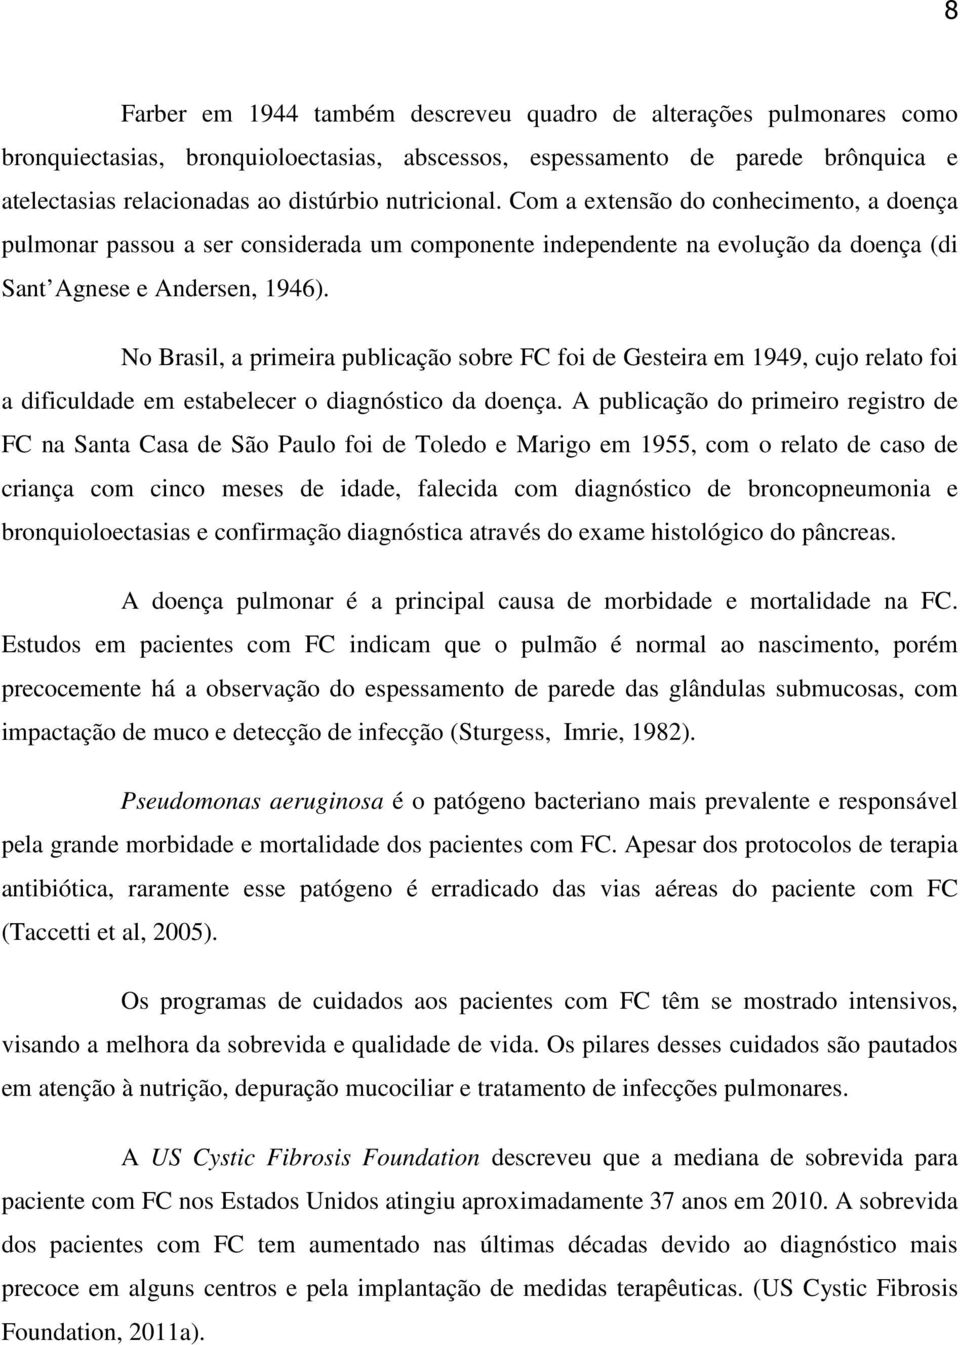 No Brasil, a primeira publicação sobre FC foi de Gesteira em 1949, cujo relato foi a dificuldade em estabelecer o diagnóstico da doença.